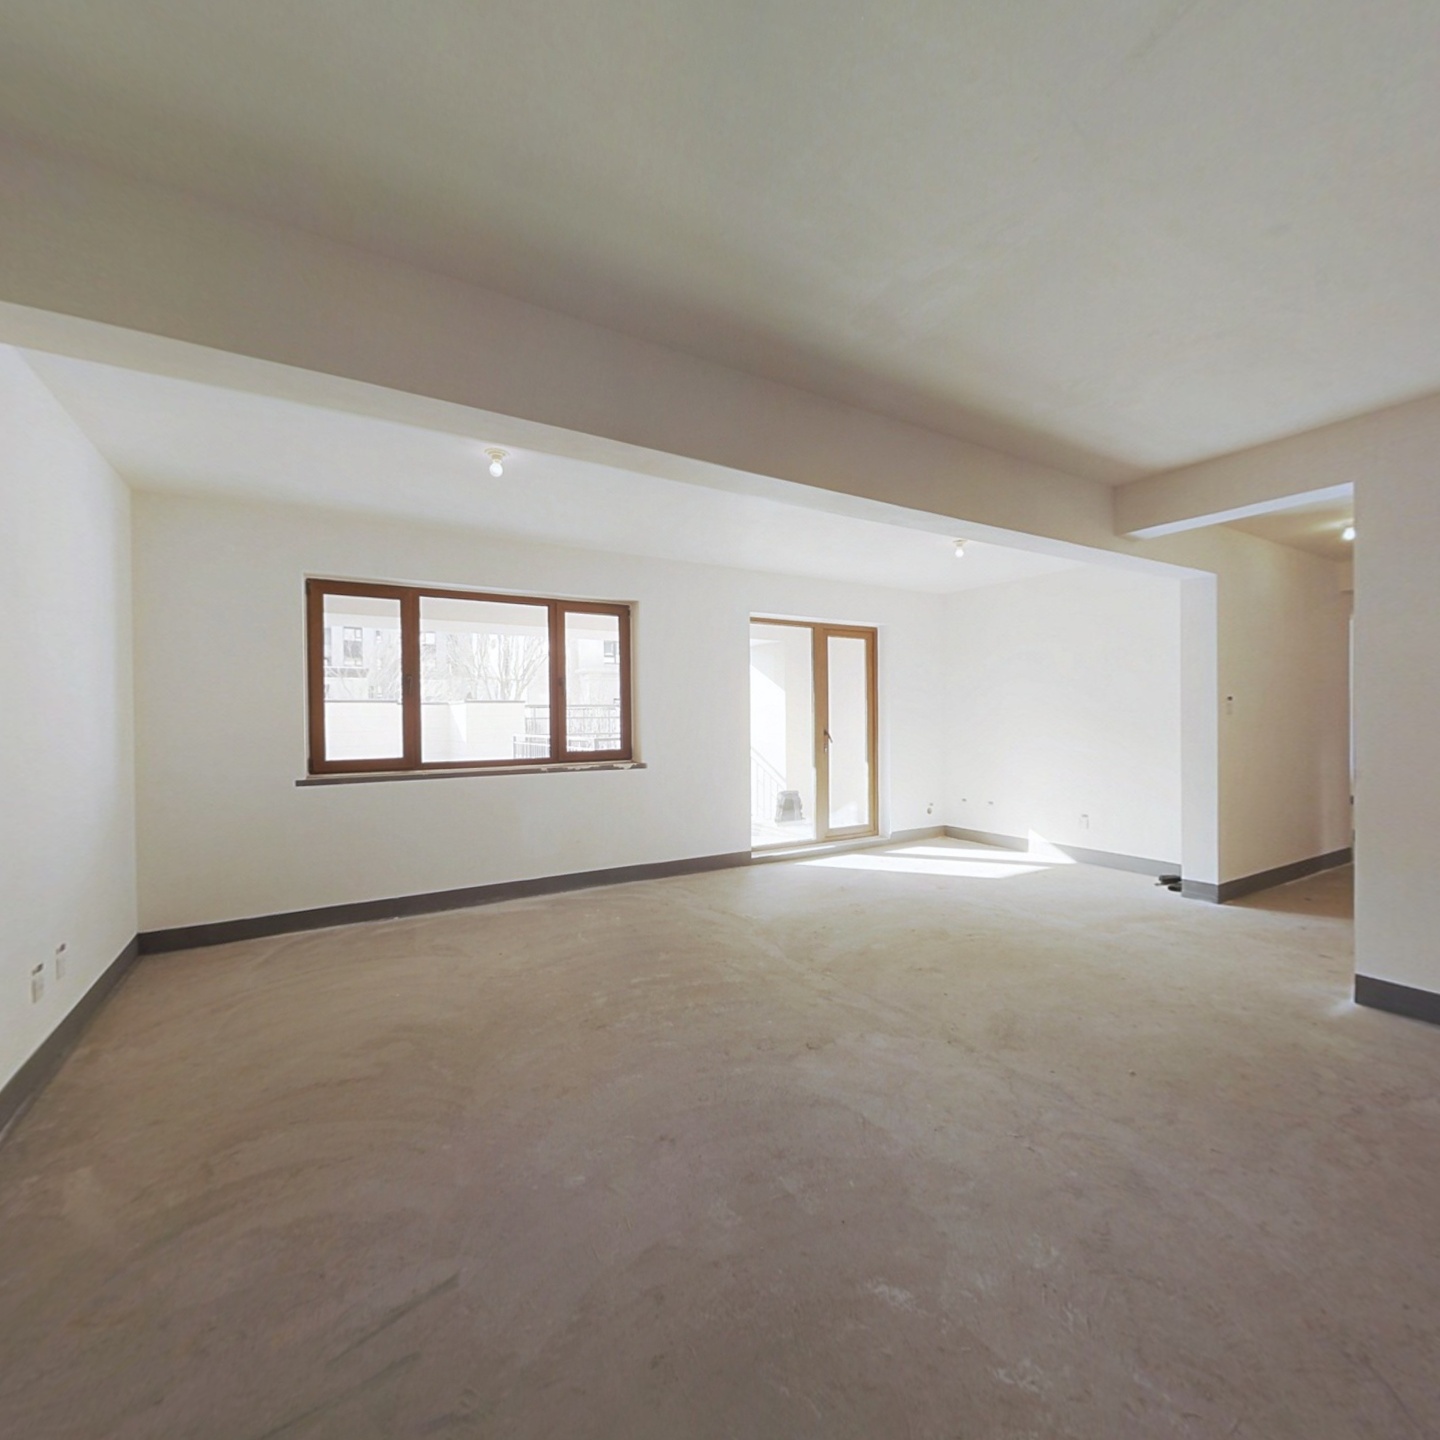 龙湖天宸原著别墅 带地下室 使用面积能达到300多平